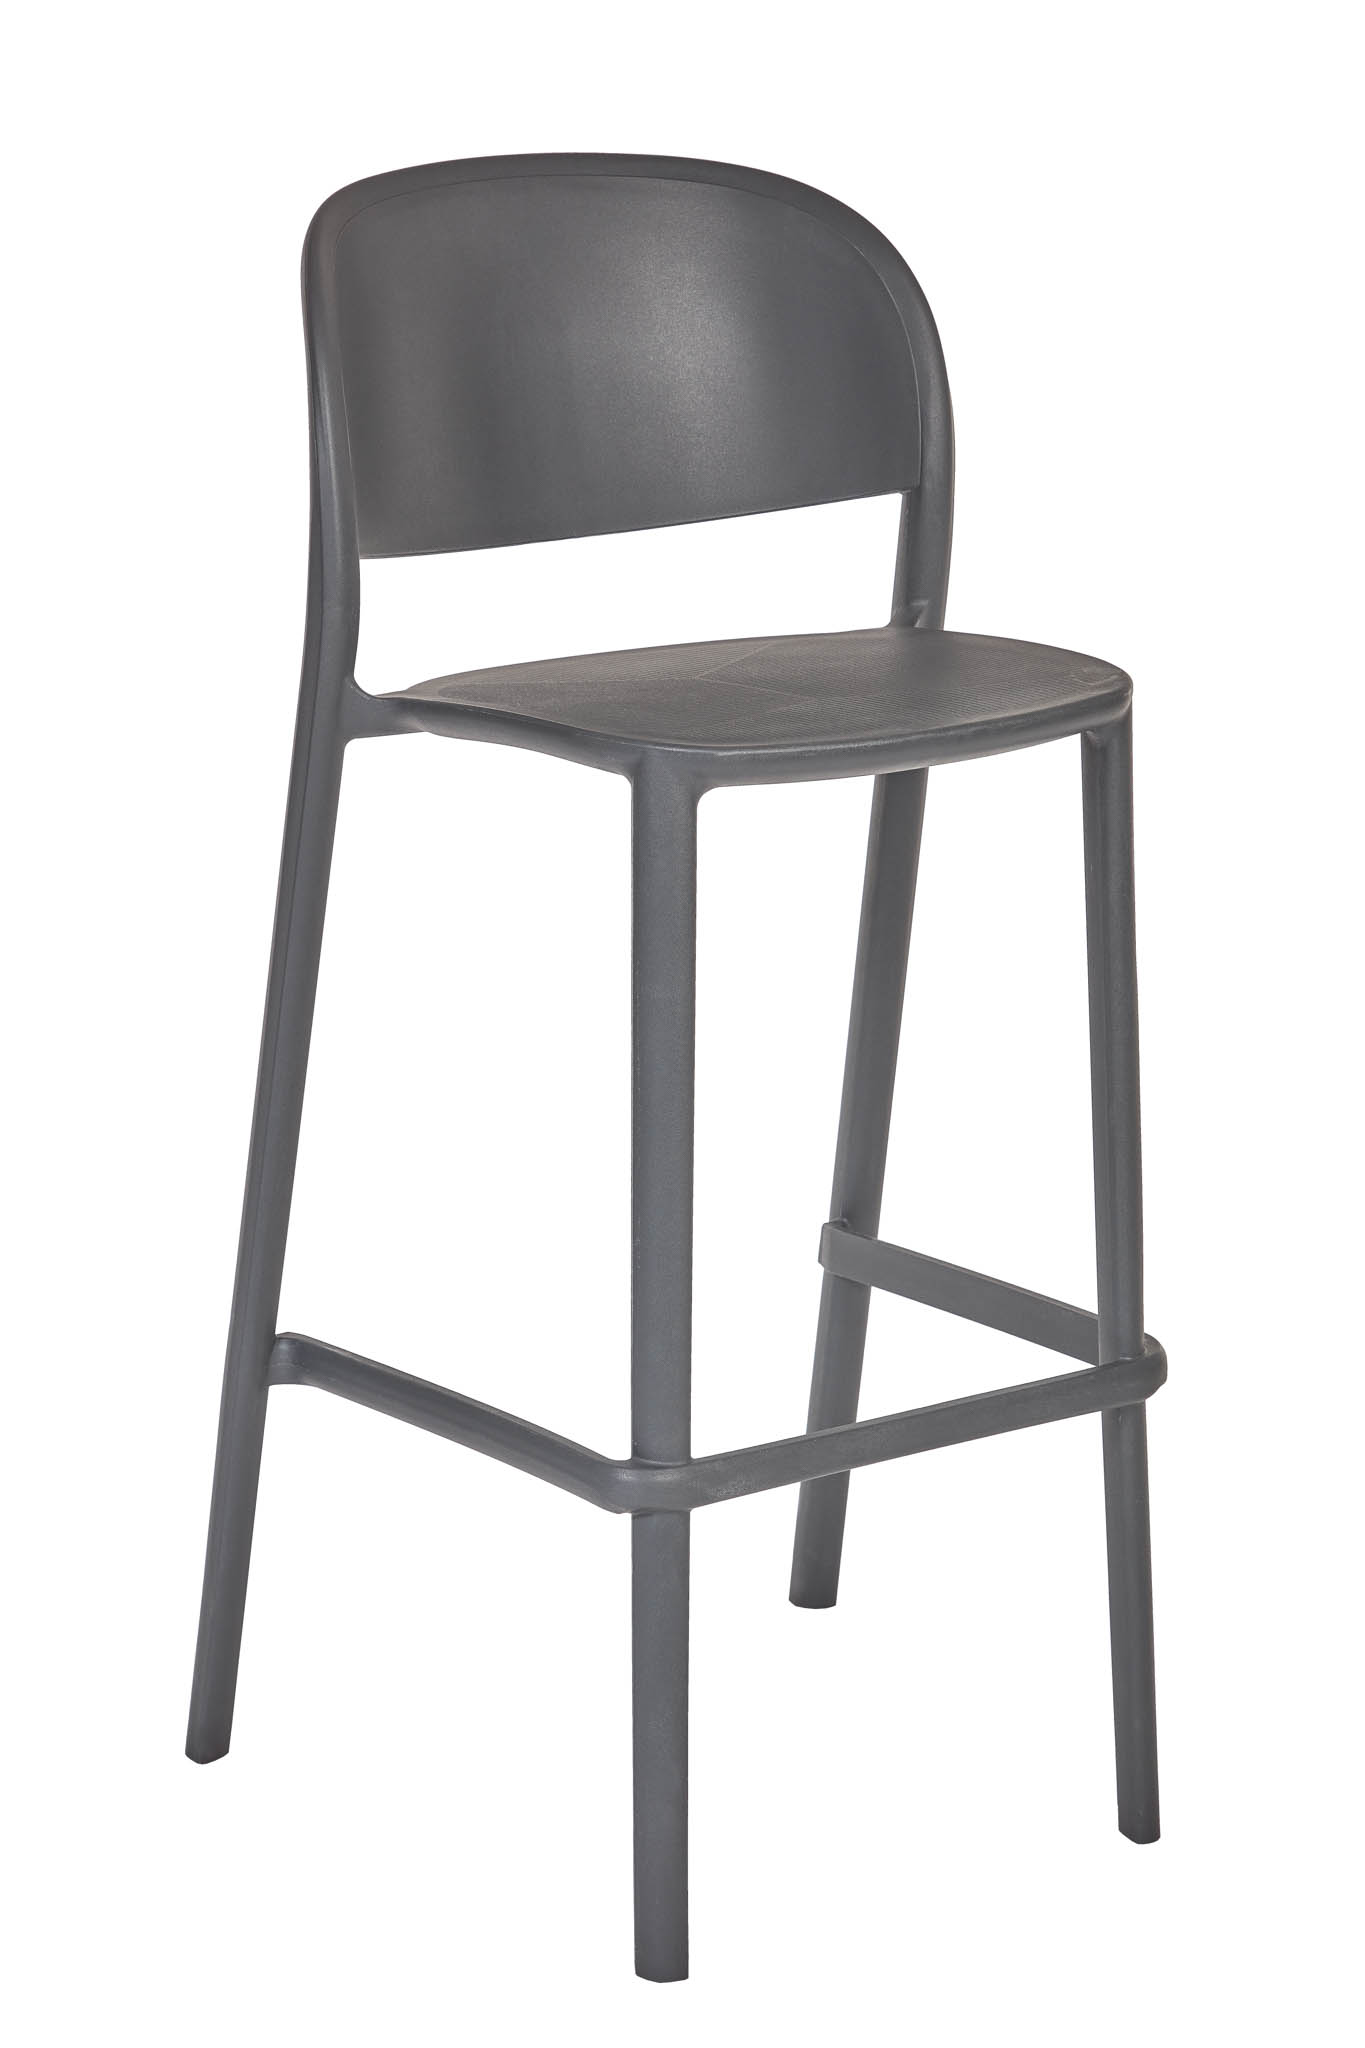 AD hotelska oprema Barska stolica 01 - Antracit boje slika proizvoda